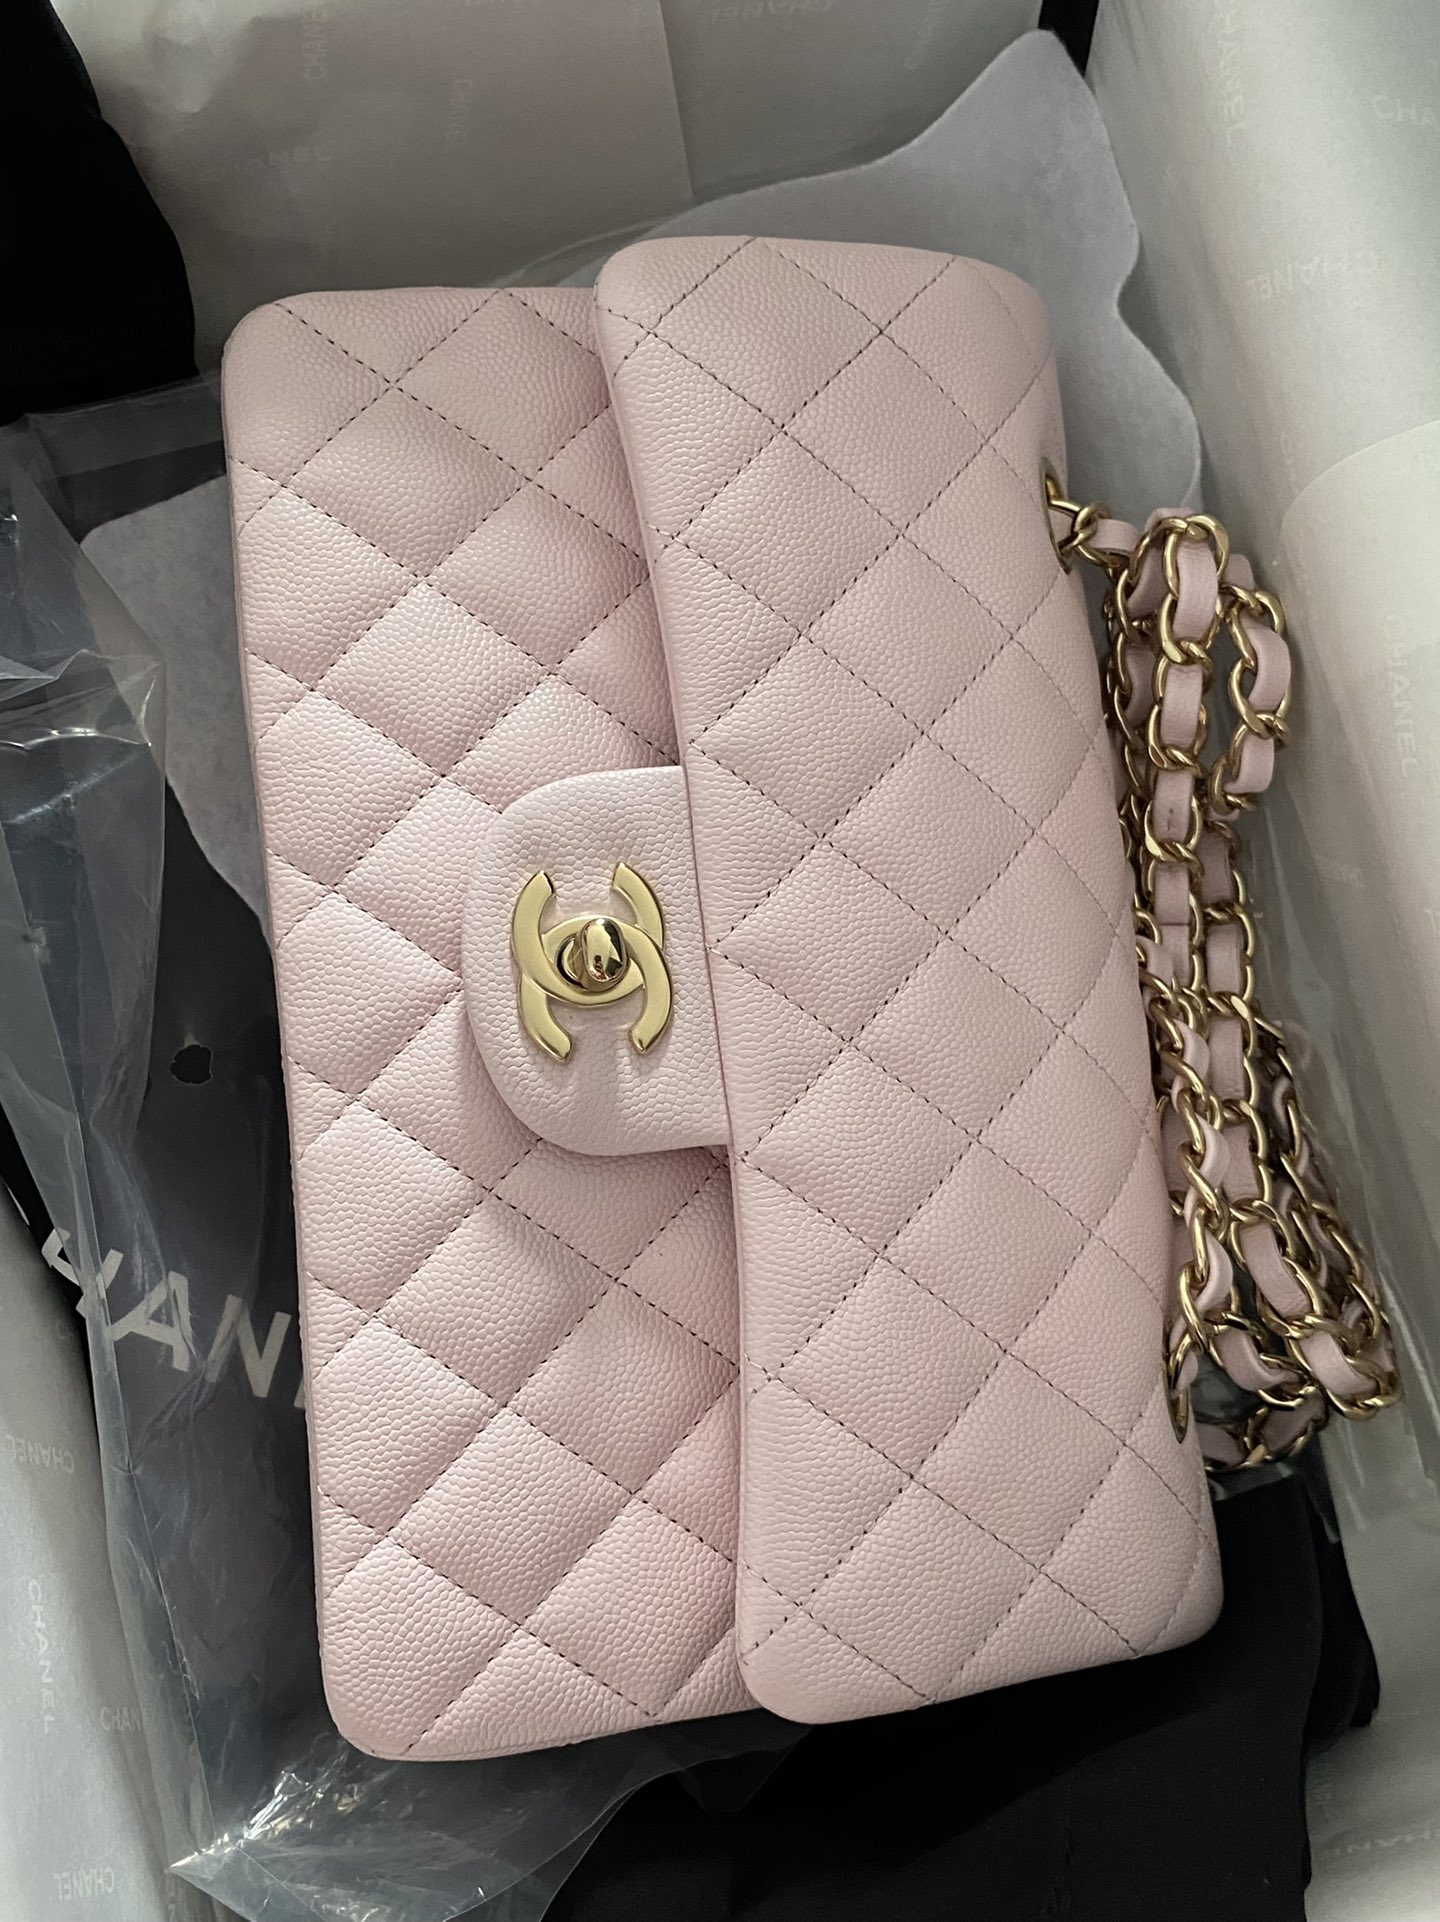 Size túi xách Chanel Classic Flap  Và cách chọn túi Chanel hợp với dáng  người  Vy Luxury